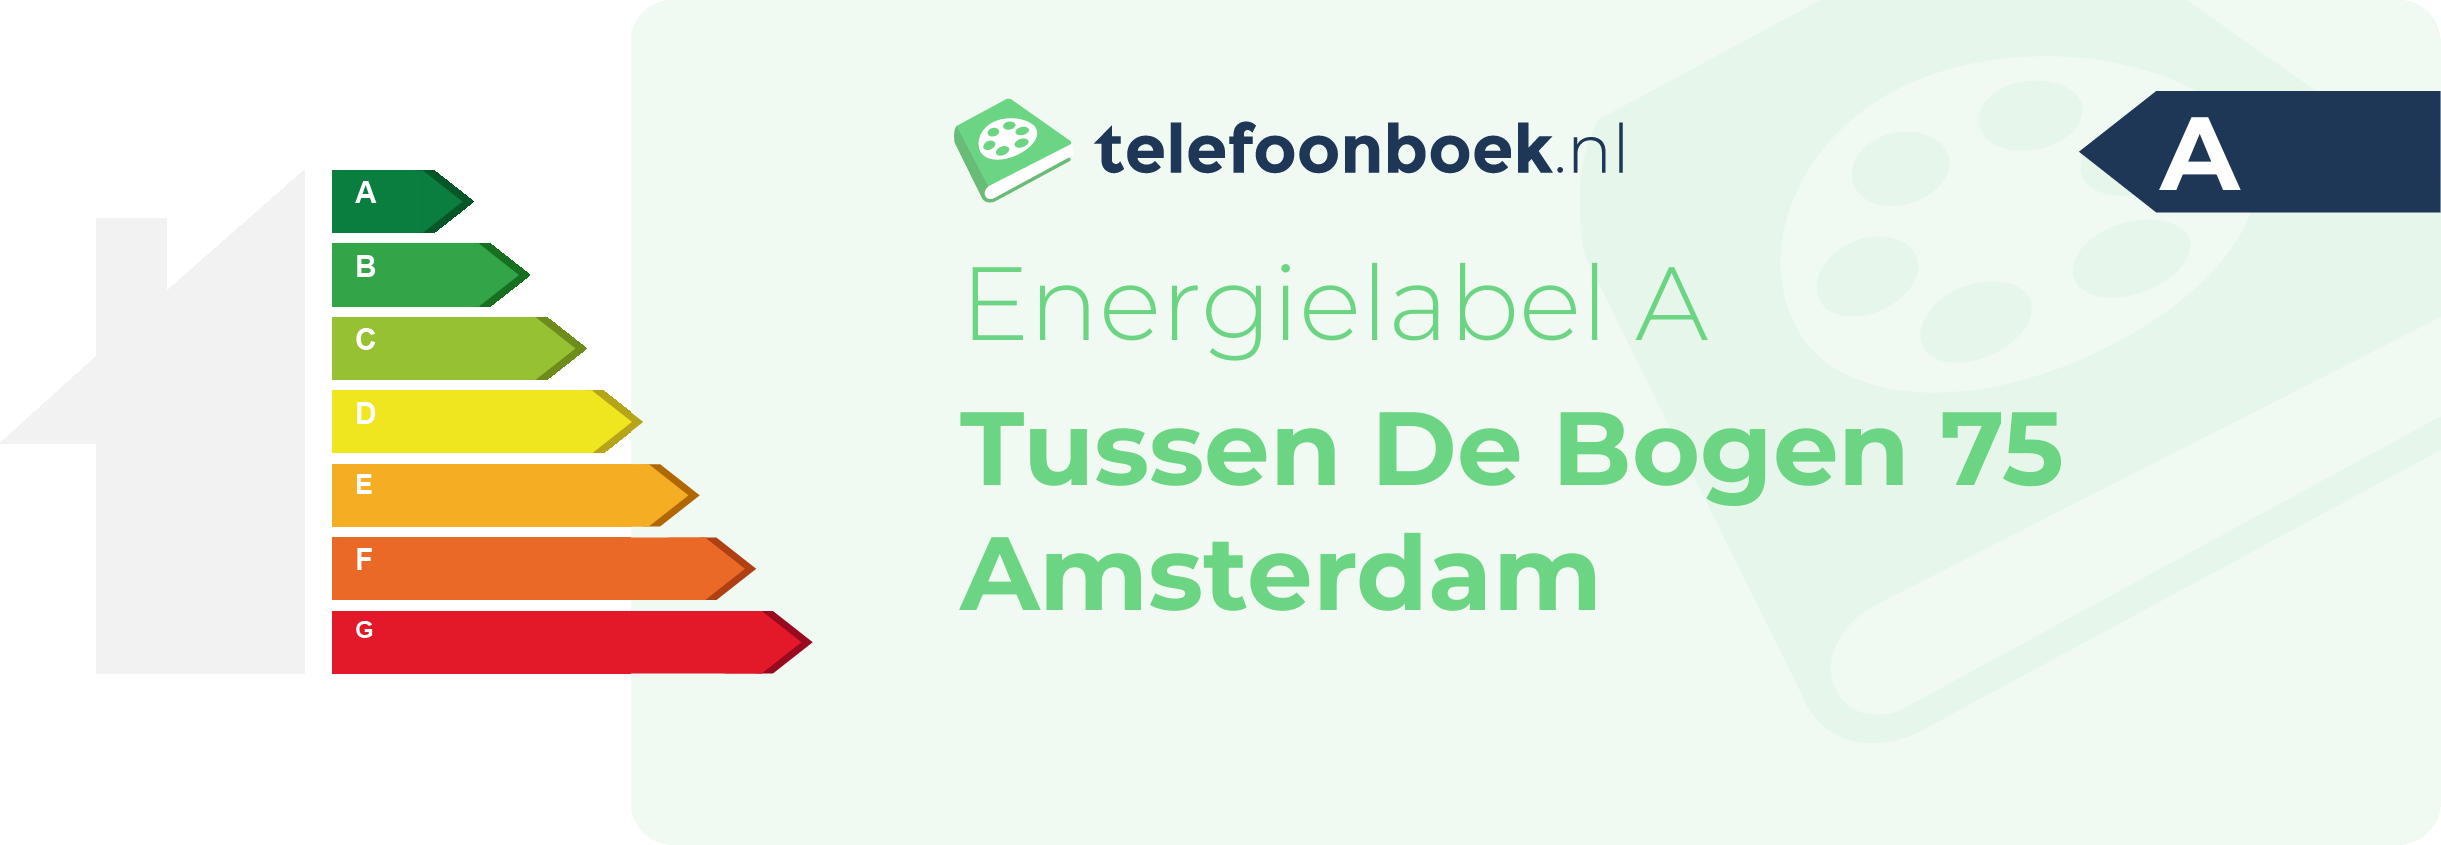 Energielabel Tussen De Bogen 75 Amsterdam